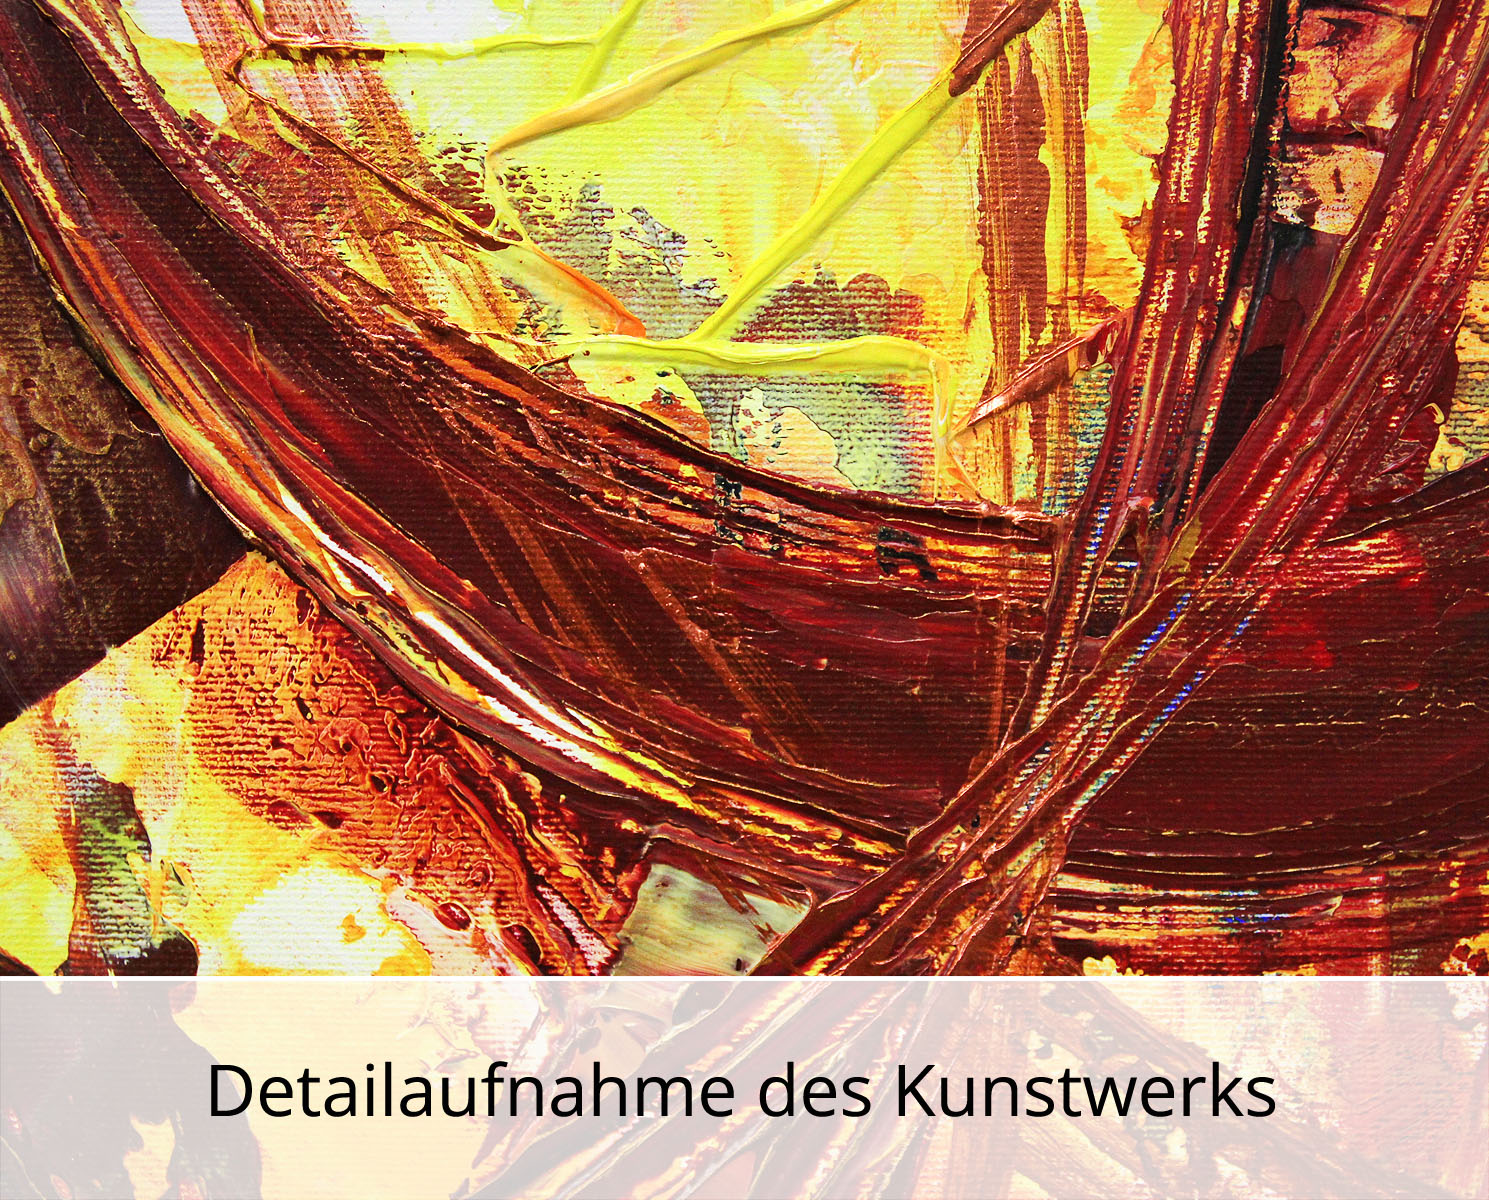 R. König: "Revival of old Values II", mehrteilige Acrylbilder, Originalgemälde (Unikat) (ri)